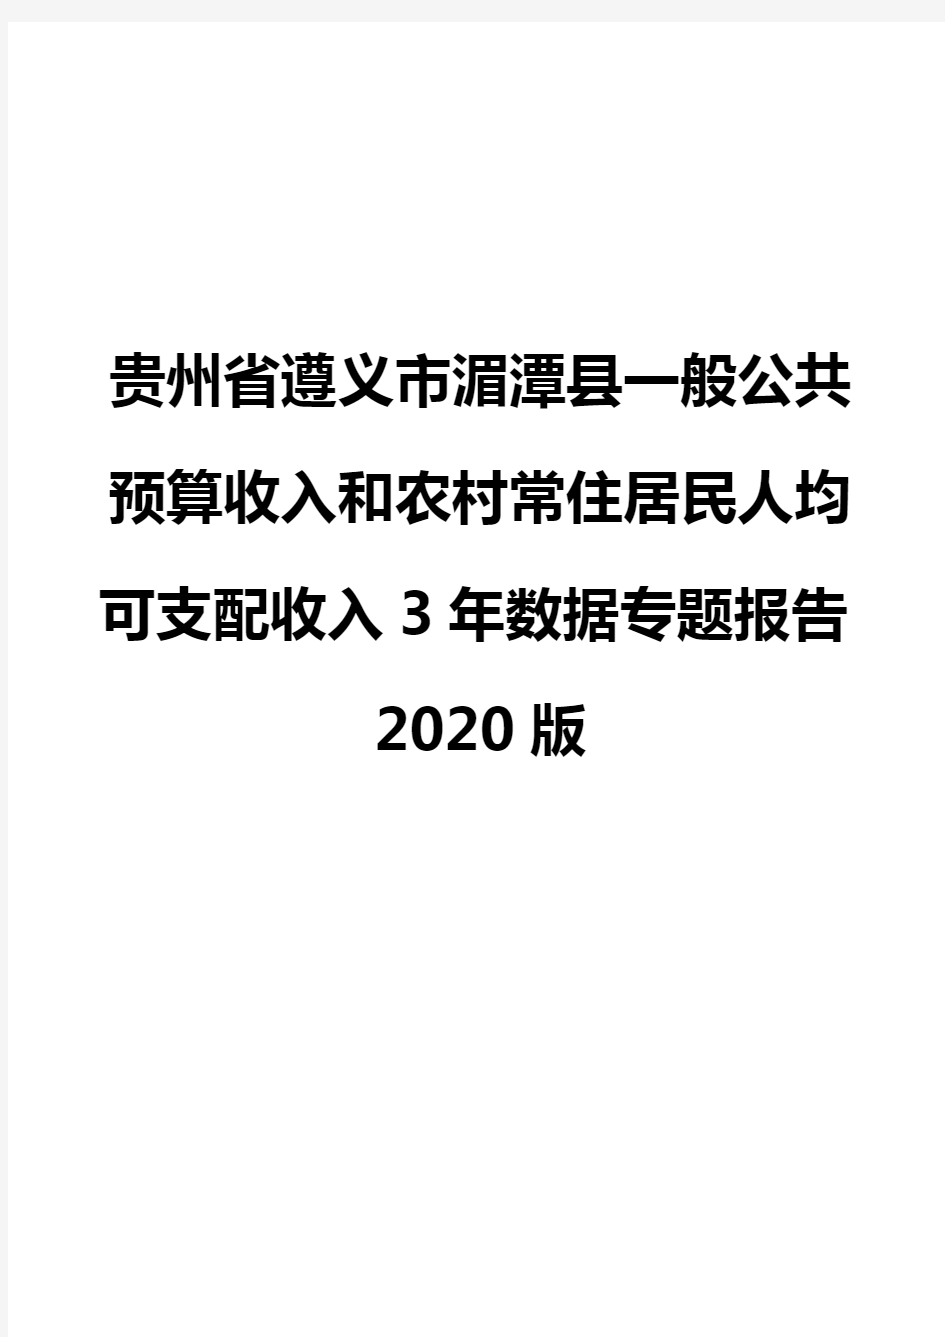 贵州省遵义市湄潭县一般公共预算收入和农村常住居民人均可支配收入3年数据专题报告2020版